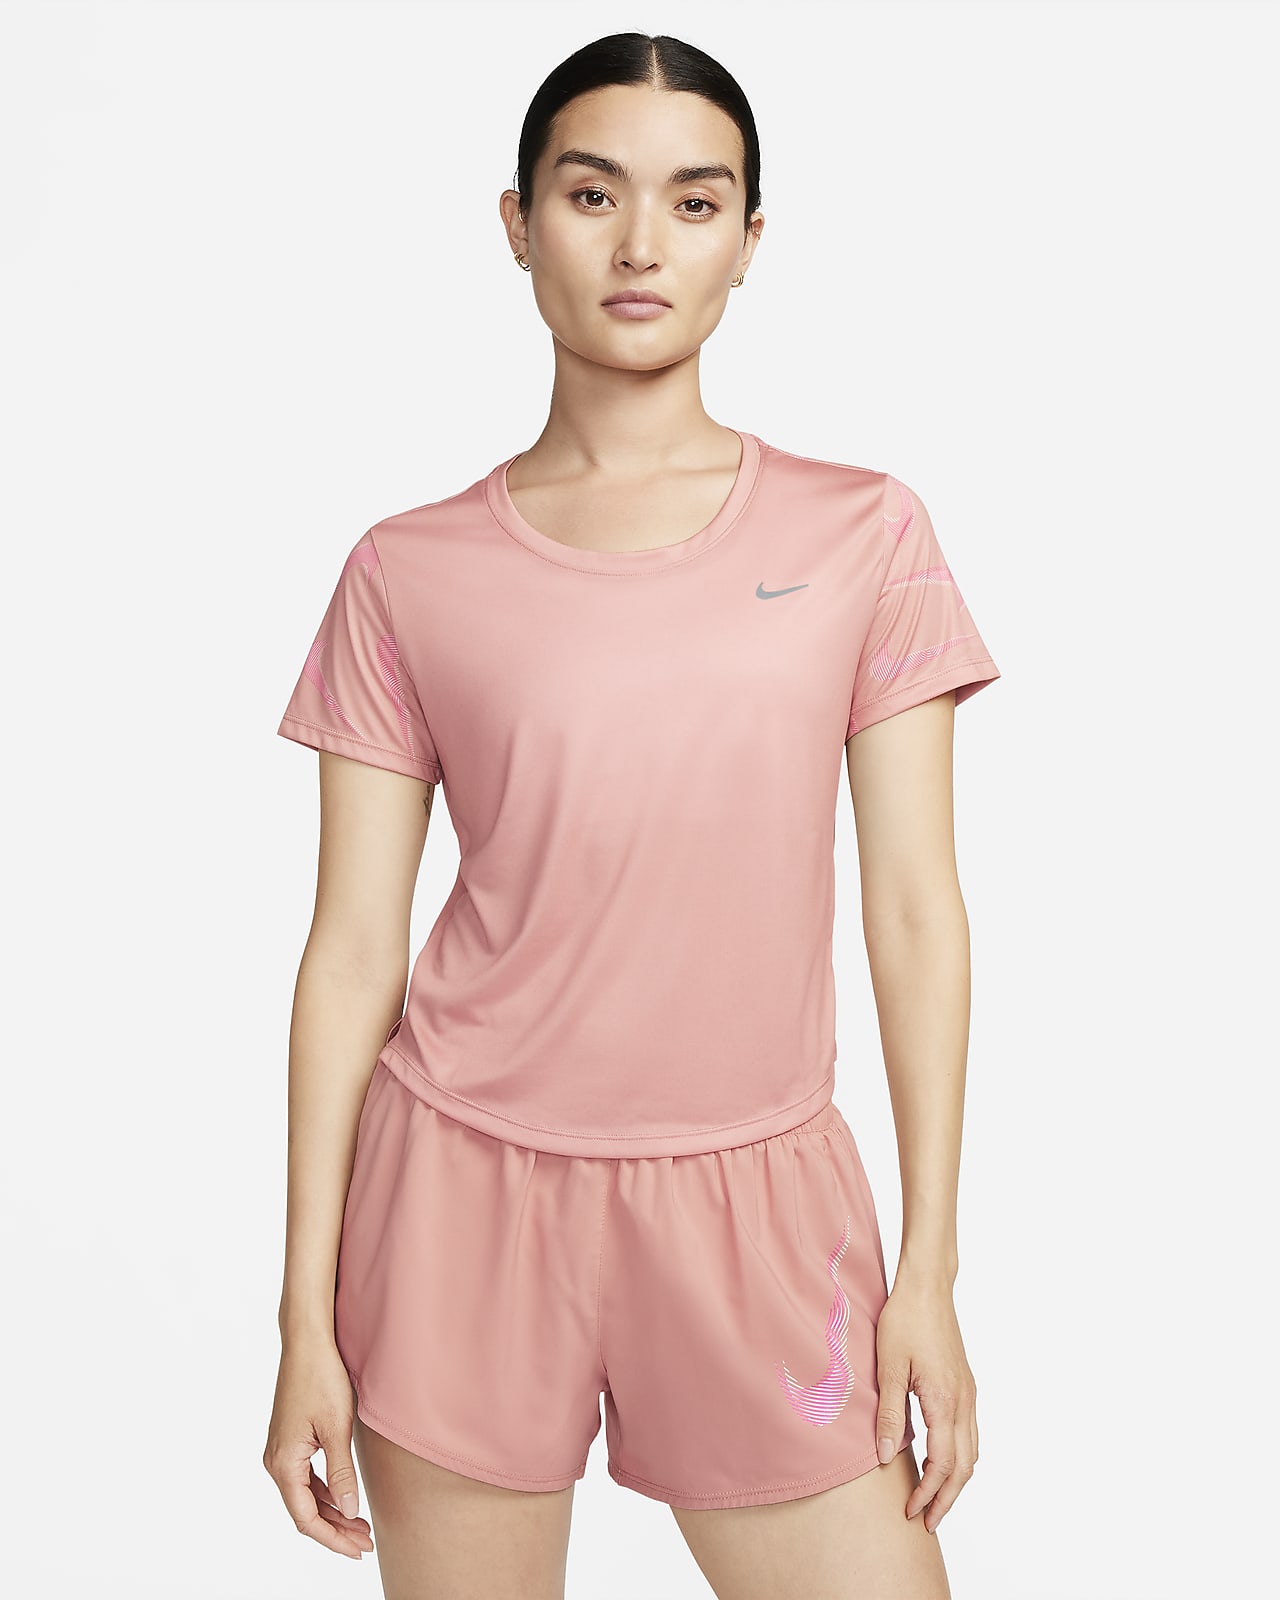 เสื้อวิ่งแขนสั้นผู้หญิงพิมพ์ลาย Nike Dri-FIT Swoosh